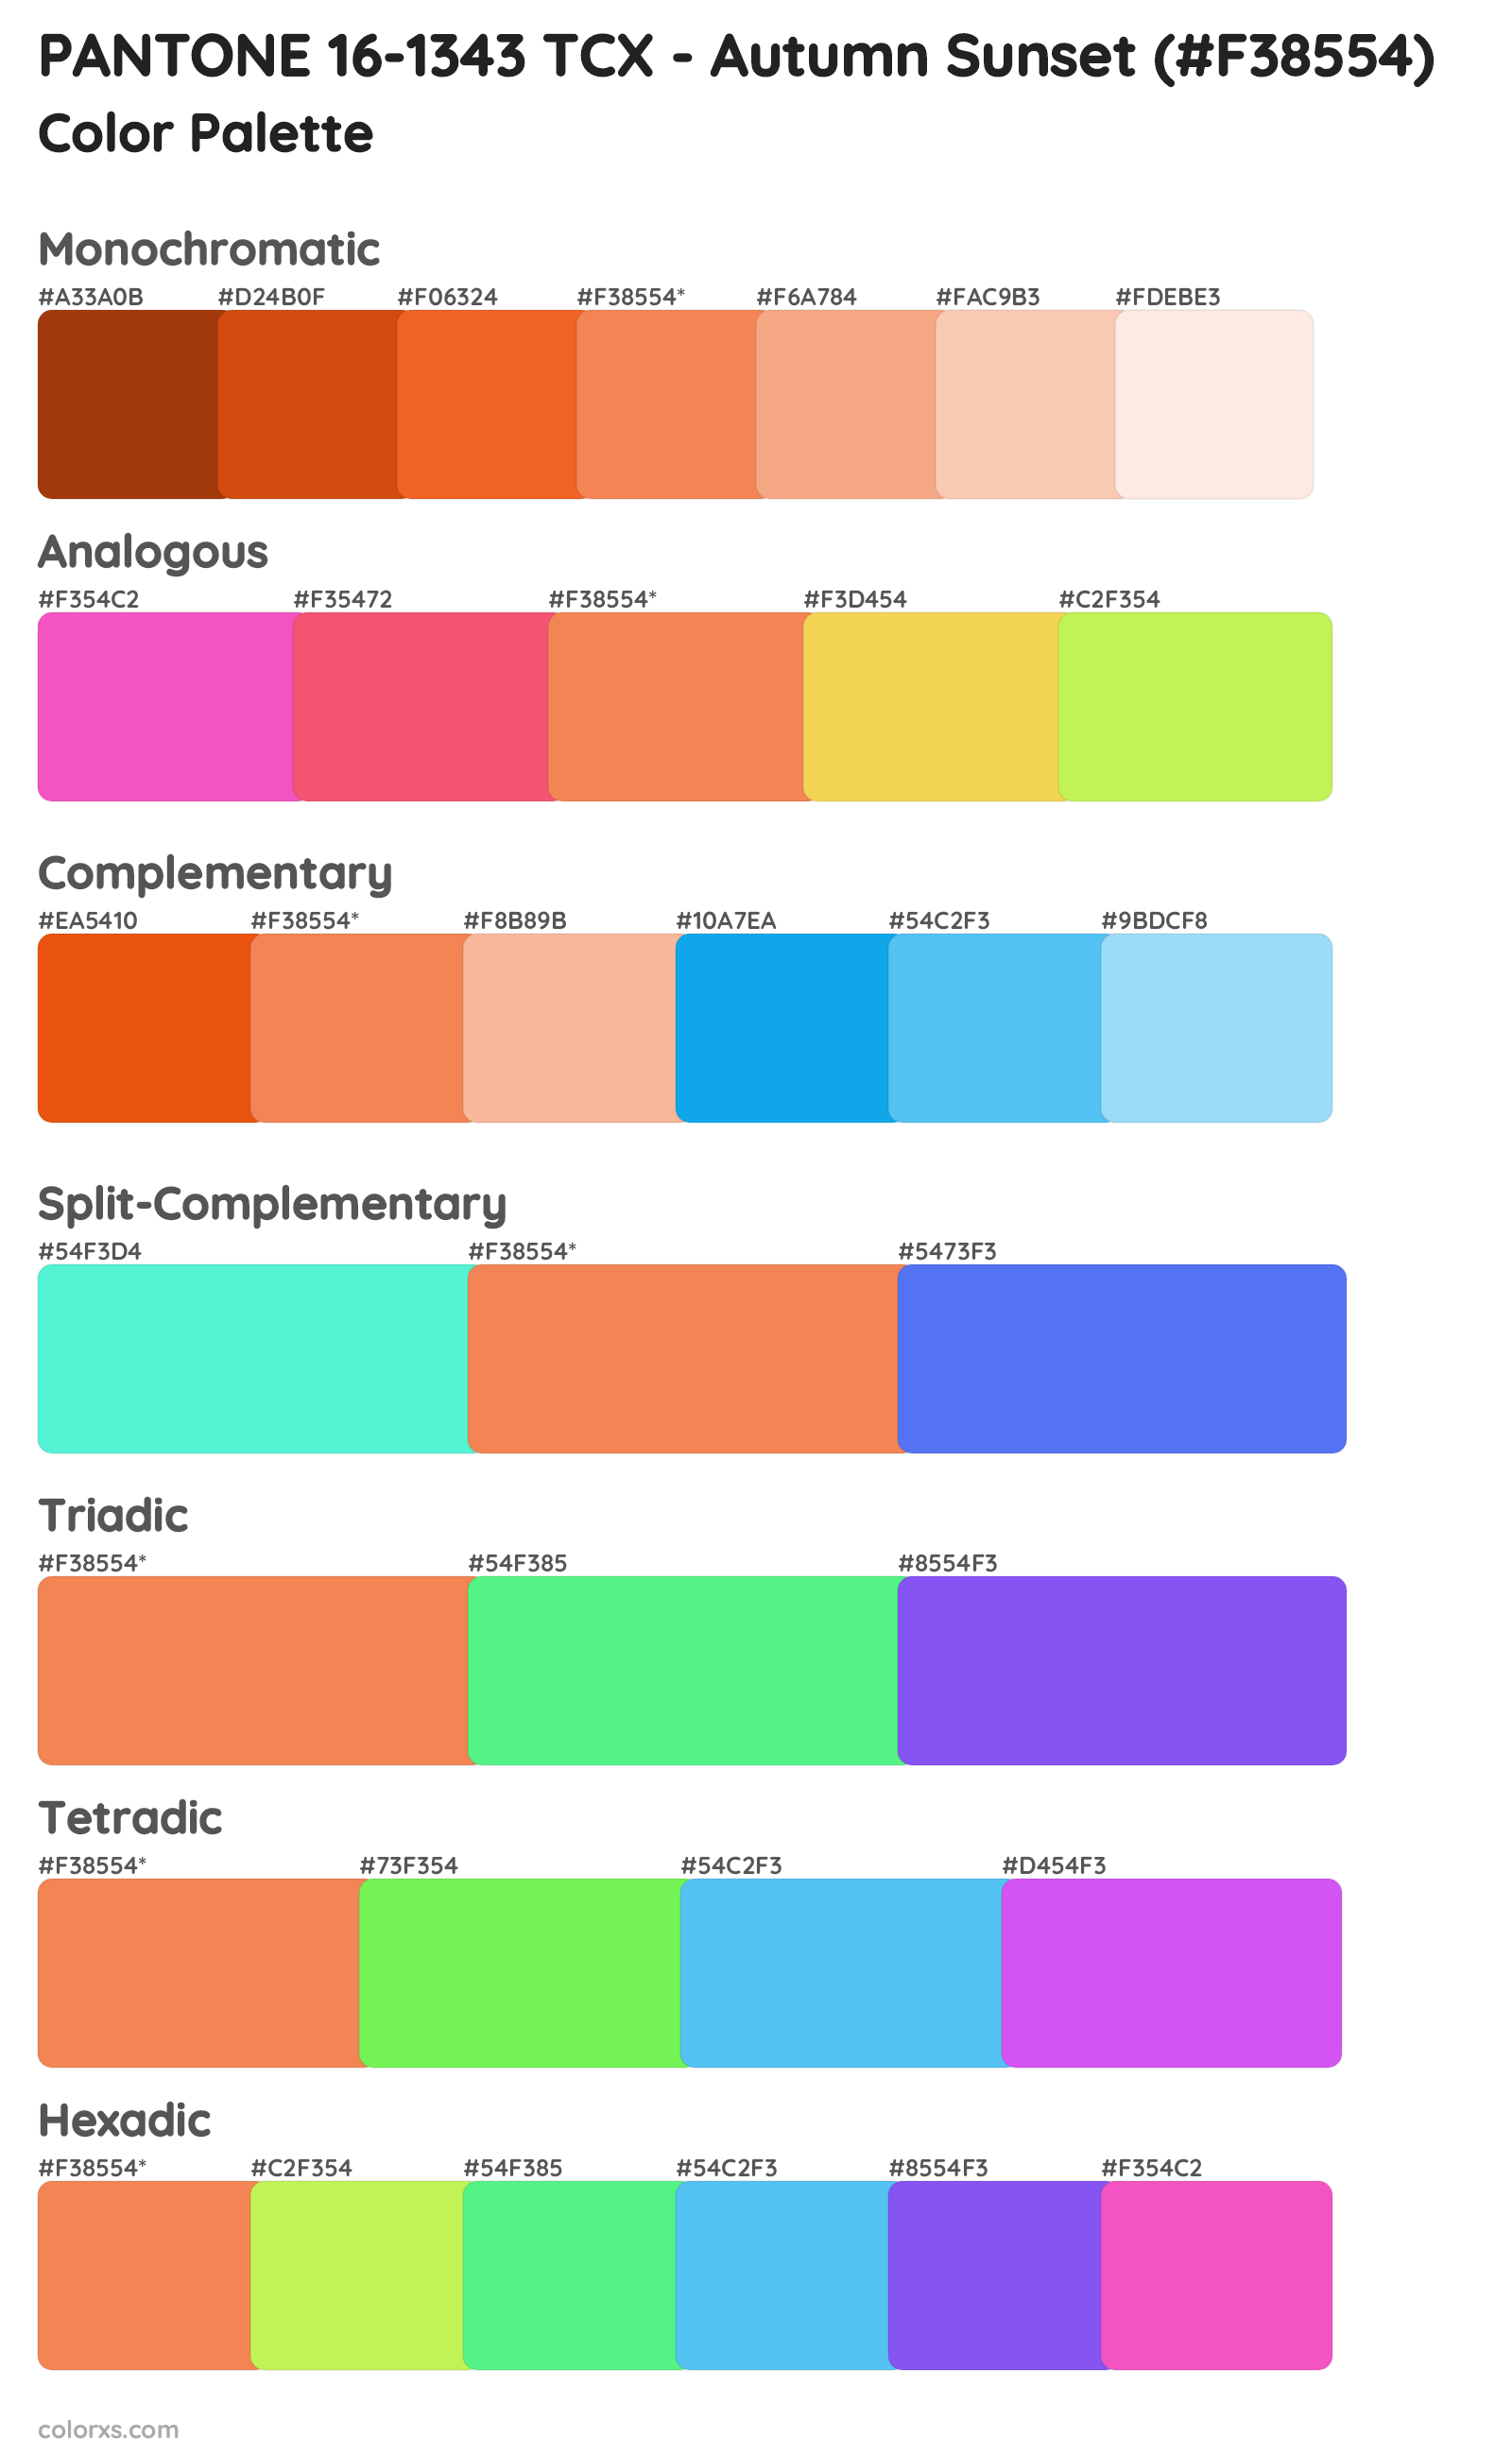 PANTONE 16-1343 TCX - Autumn Sunset Color Scheme Palettes